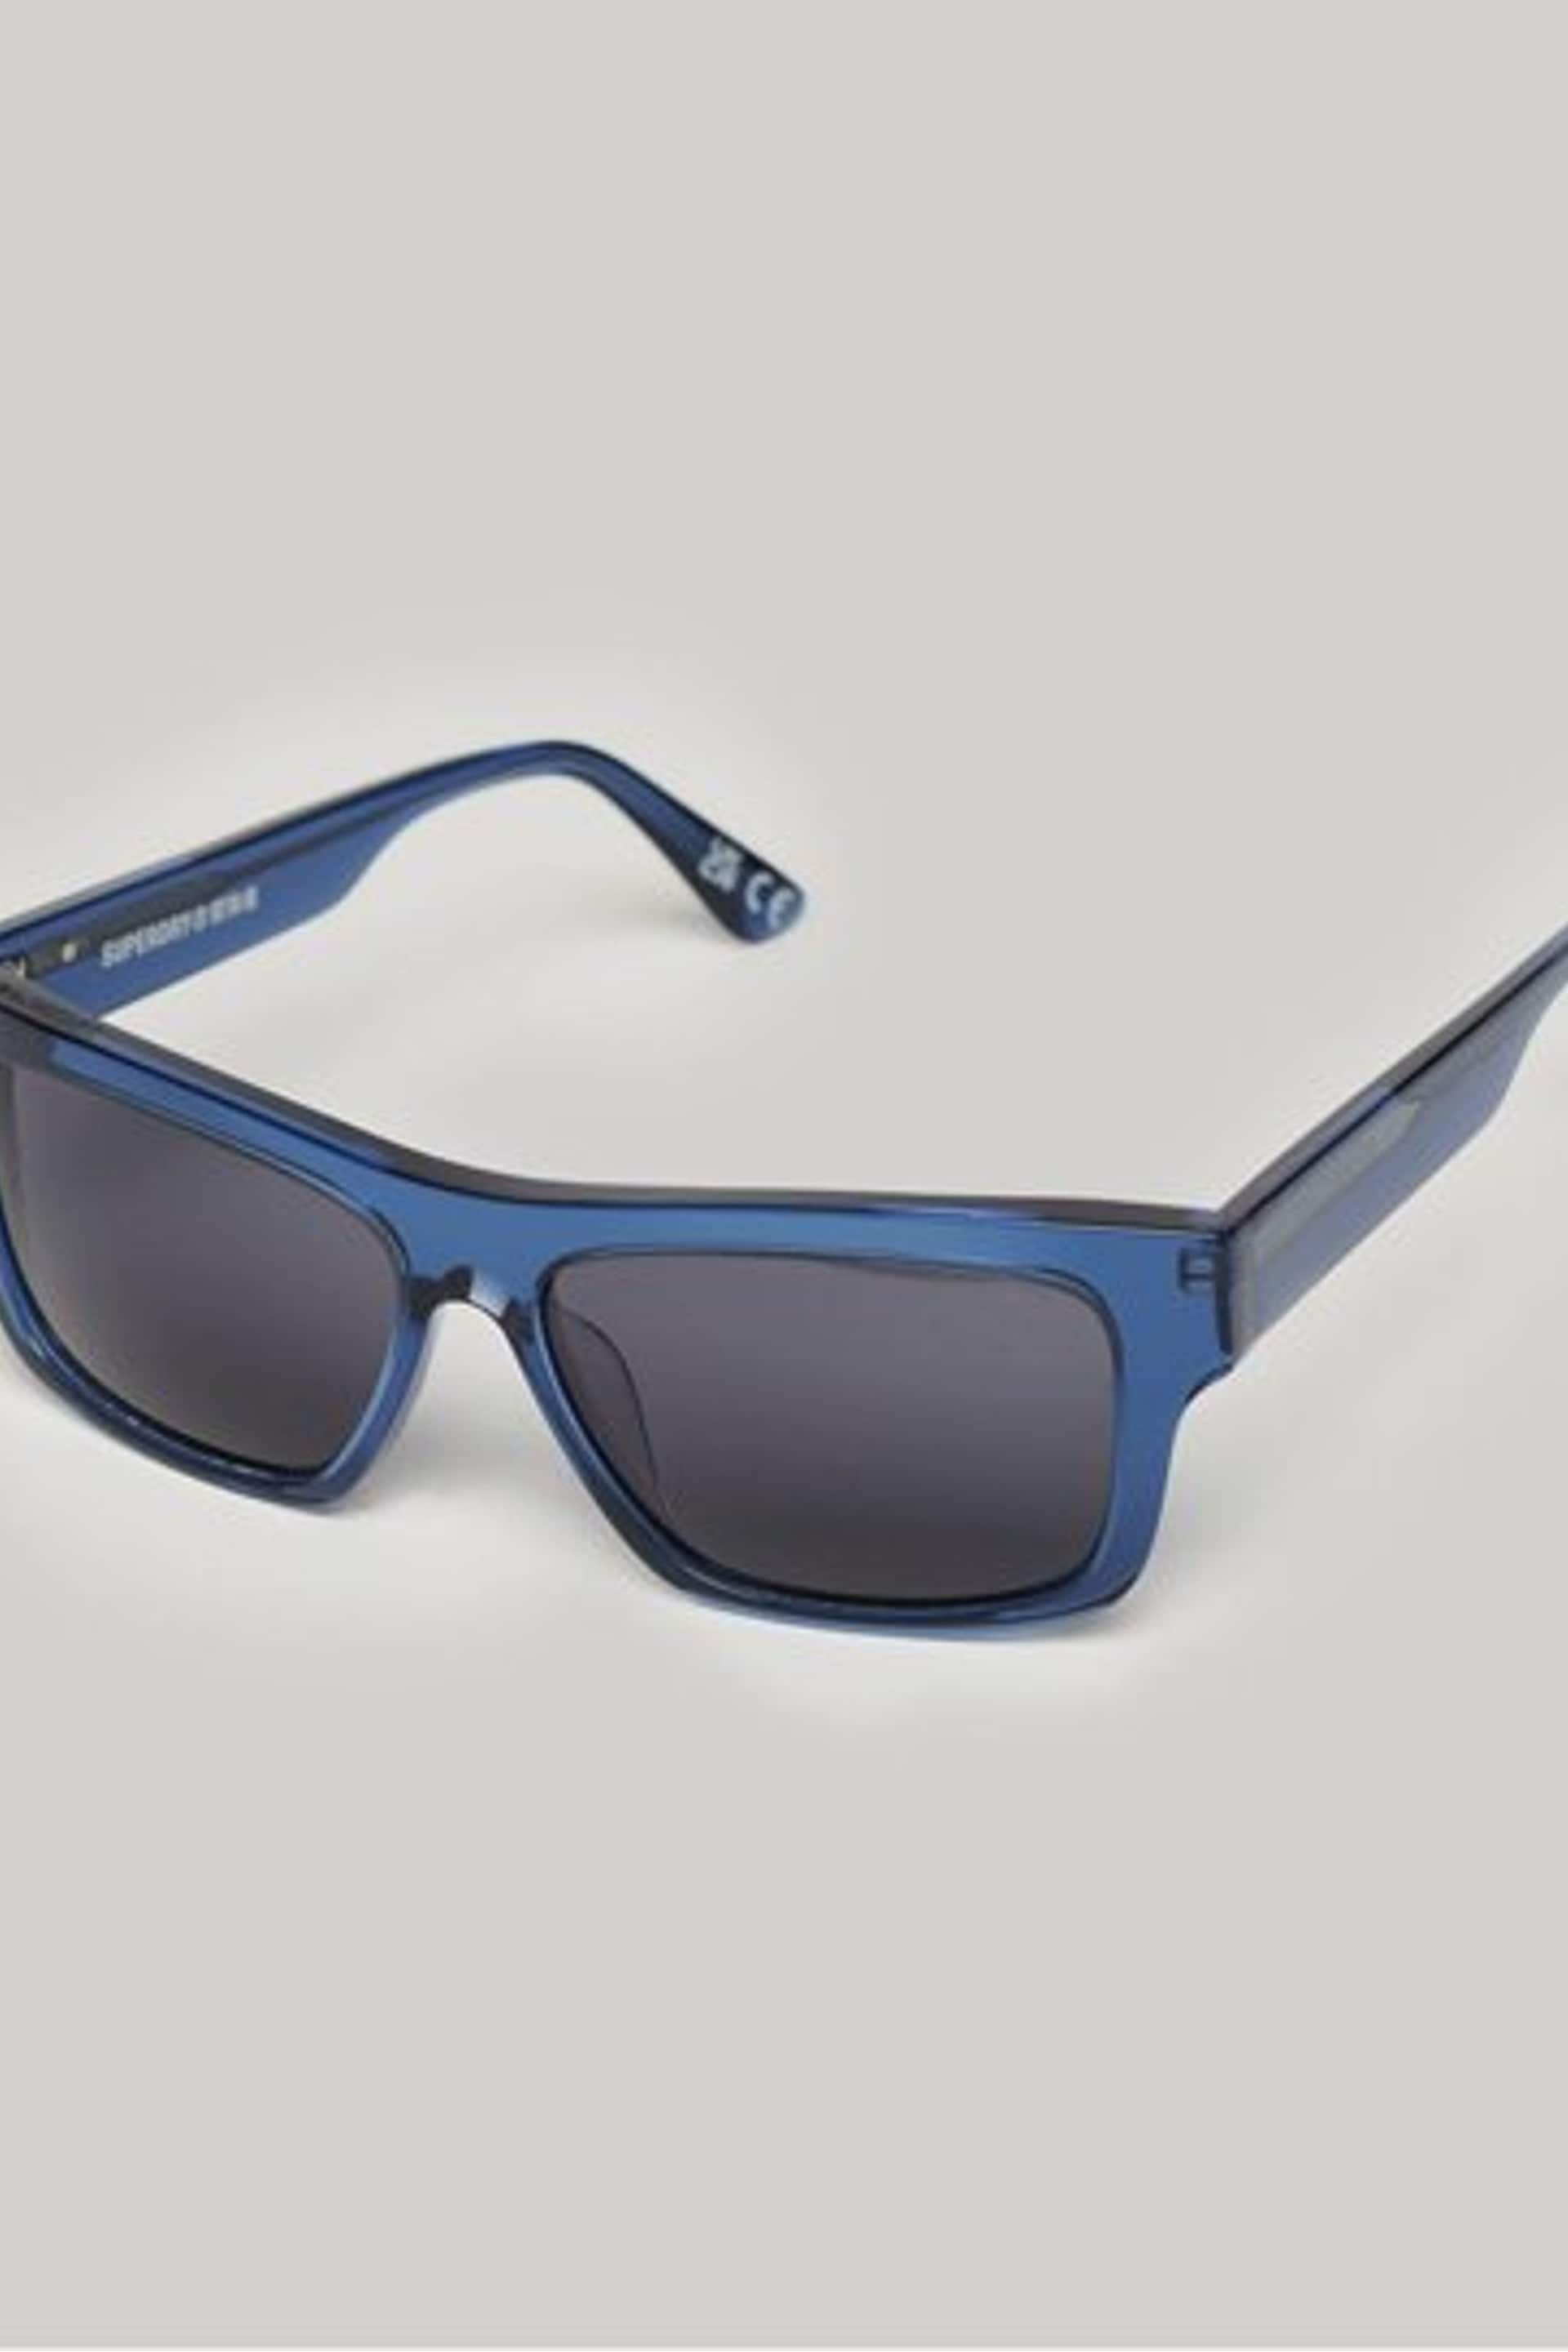 Superdry Blue SDR Alda Sunglasses - Image 1 of 4